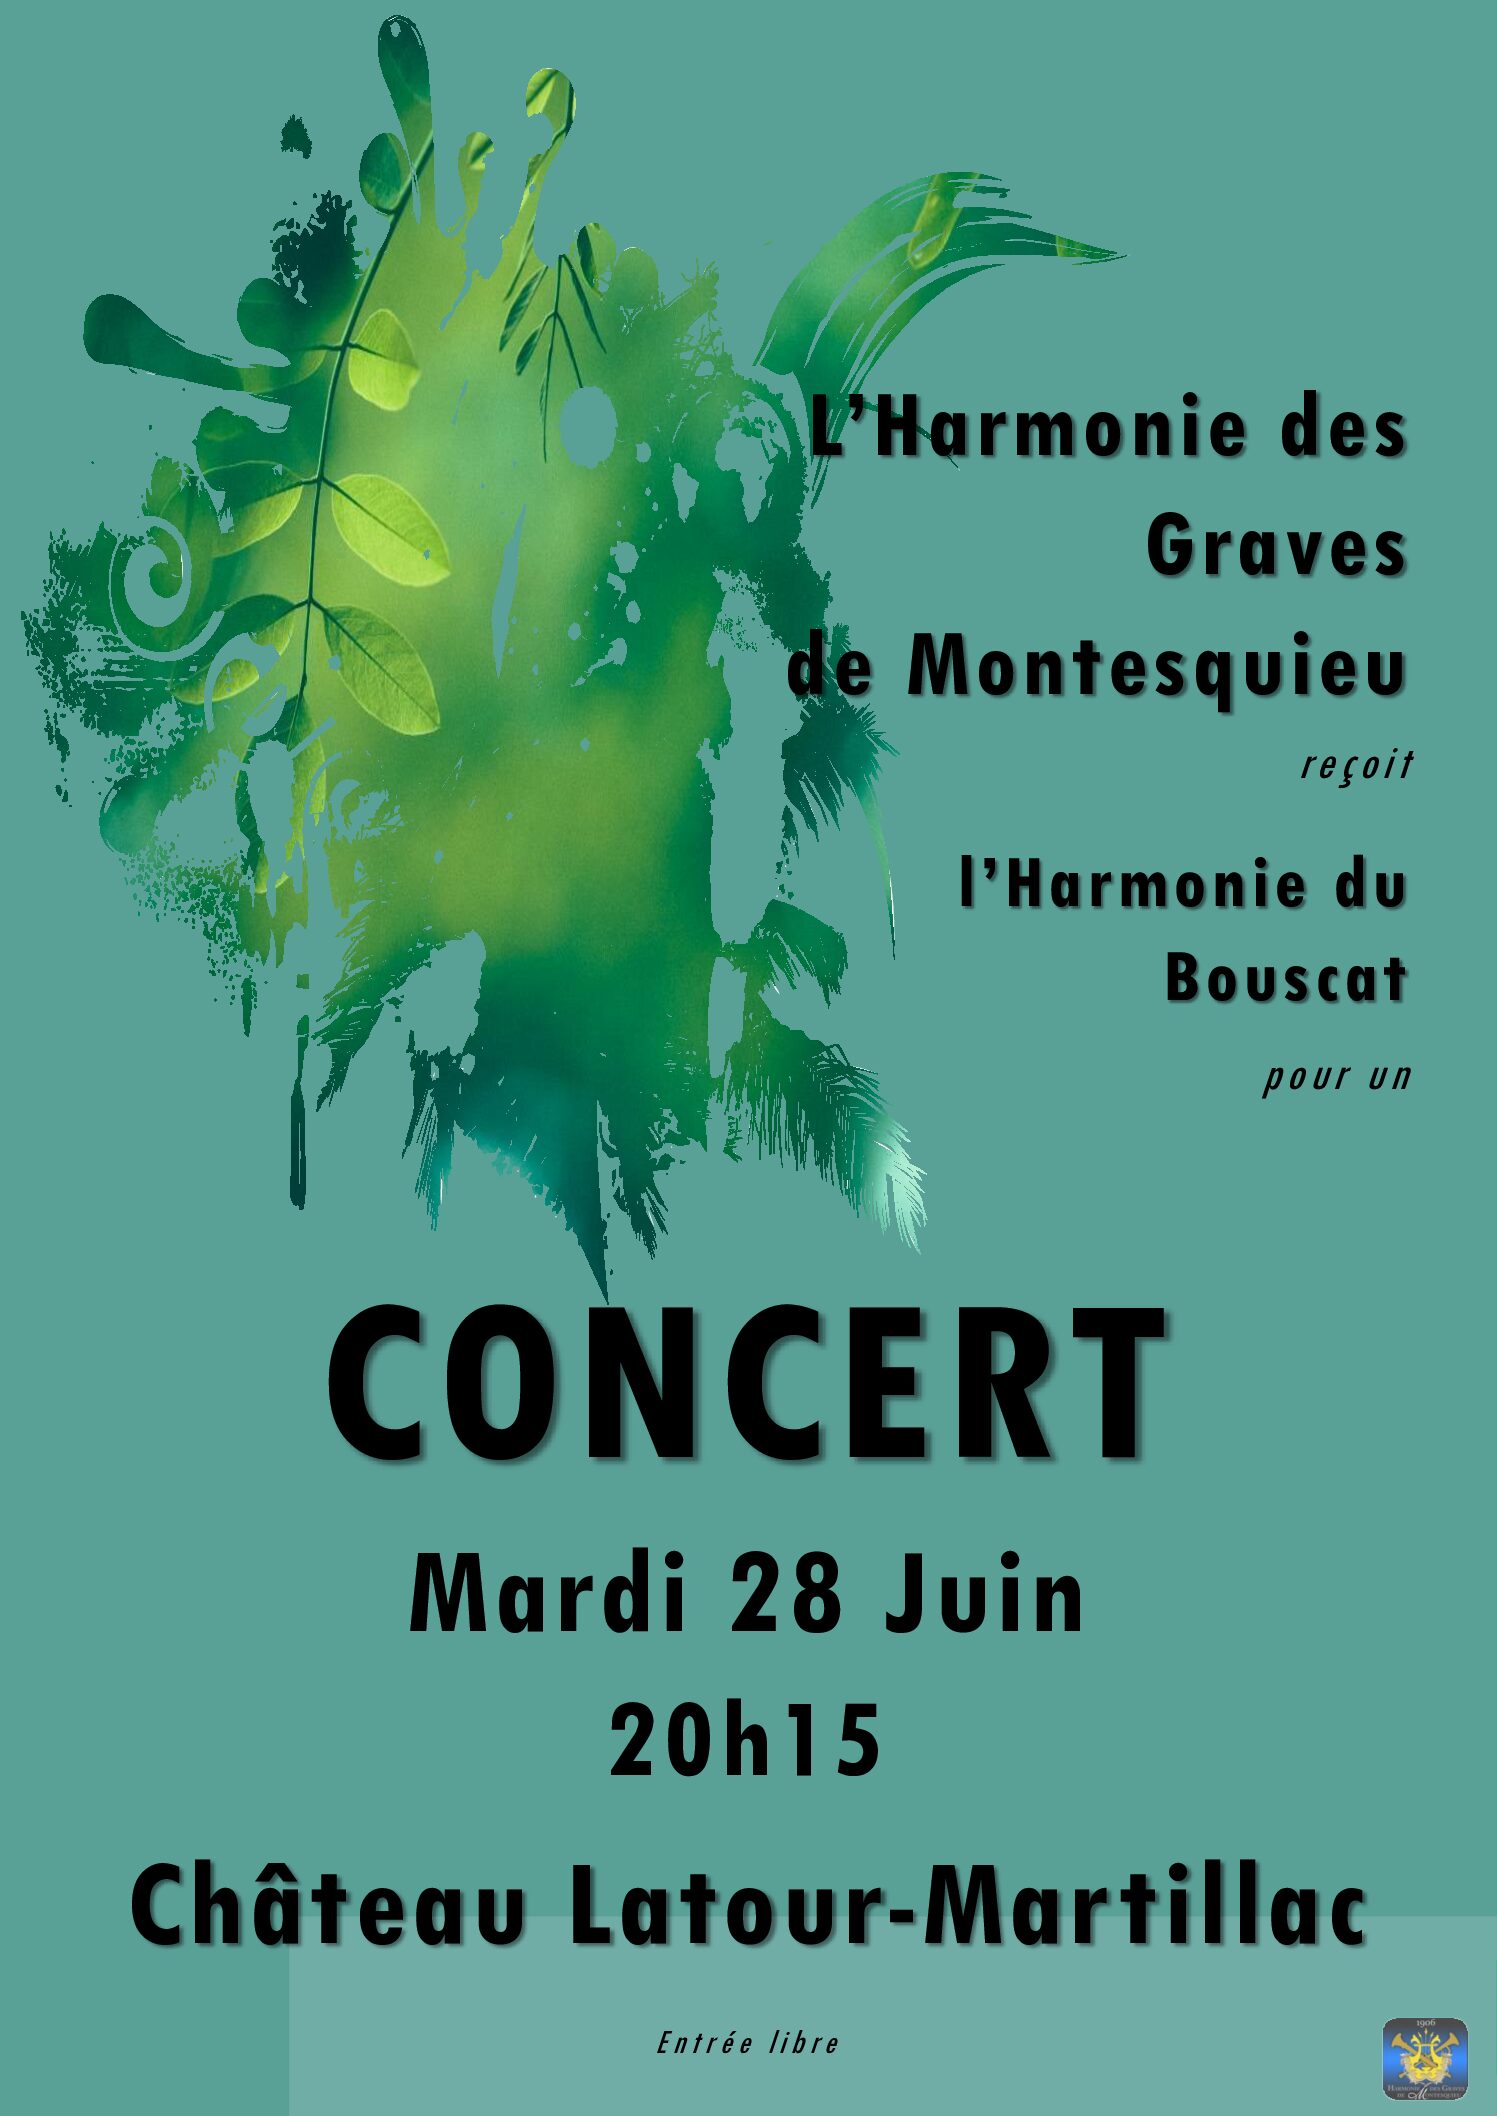 Concert de l'Harmonie des Graves à Château Latour-Martillac